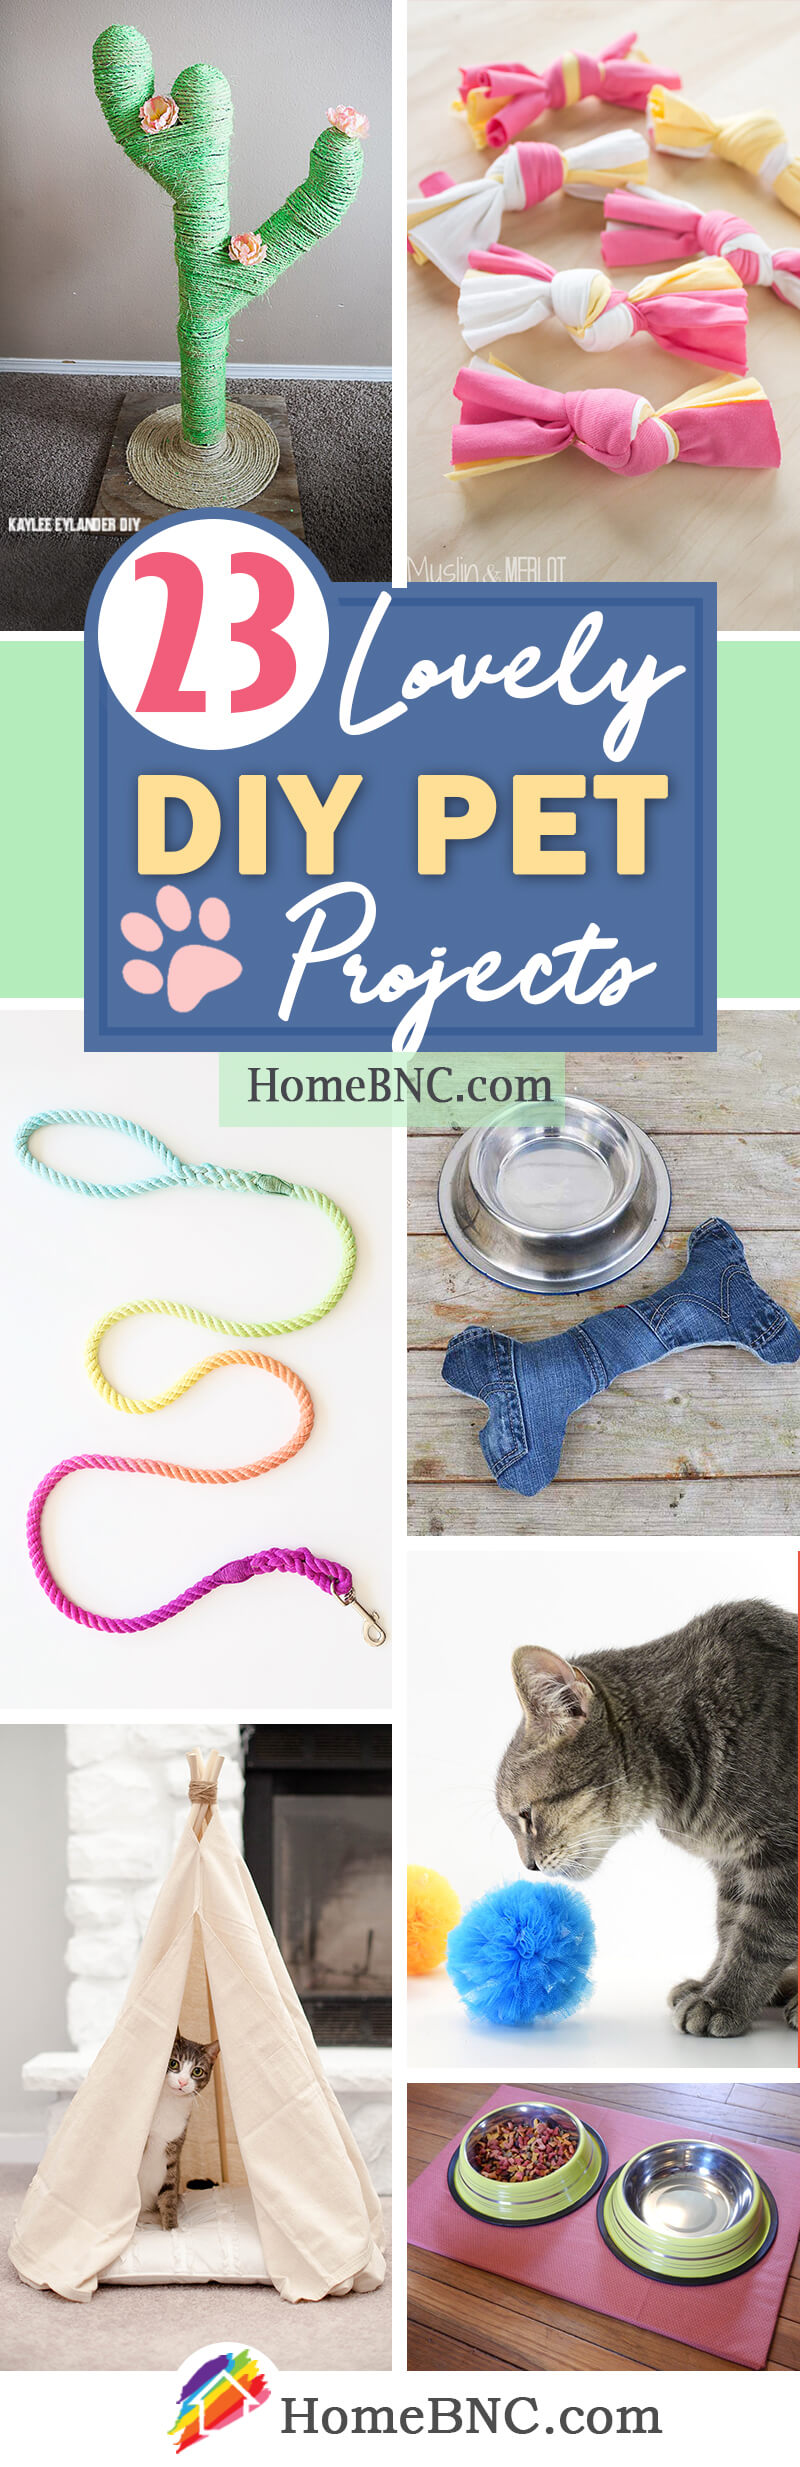 DIY Pet Project Ideas